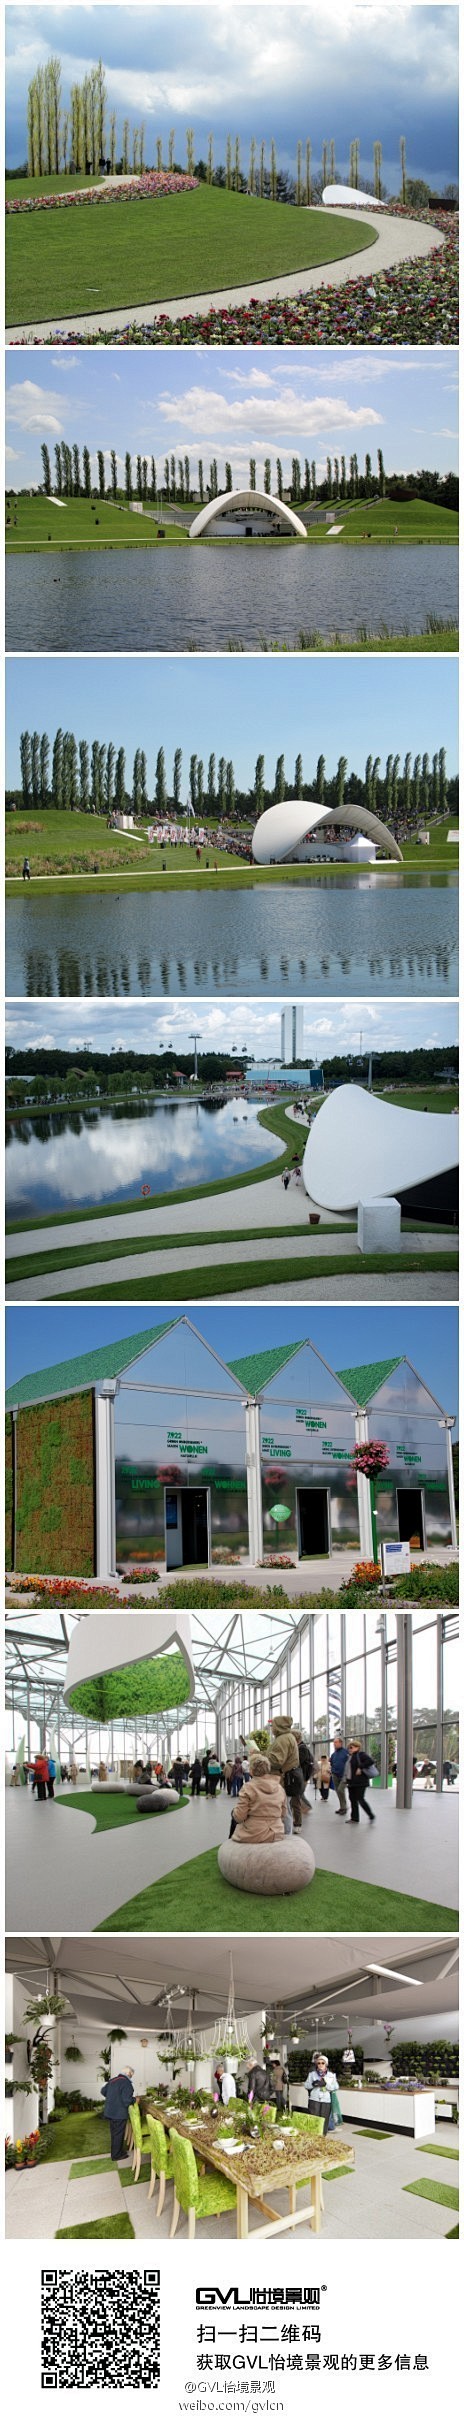 游走Floriade 2012世界园博会...